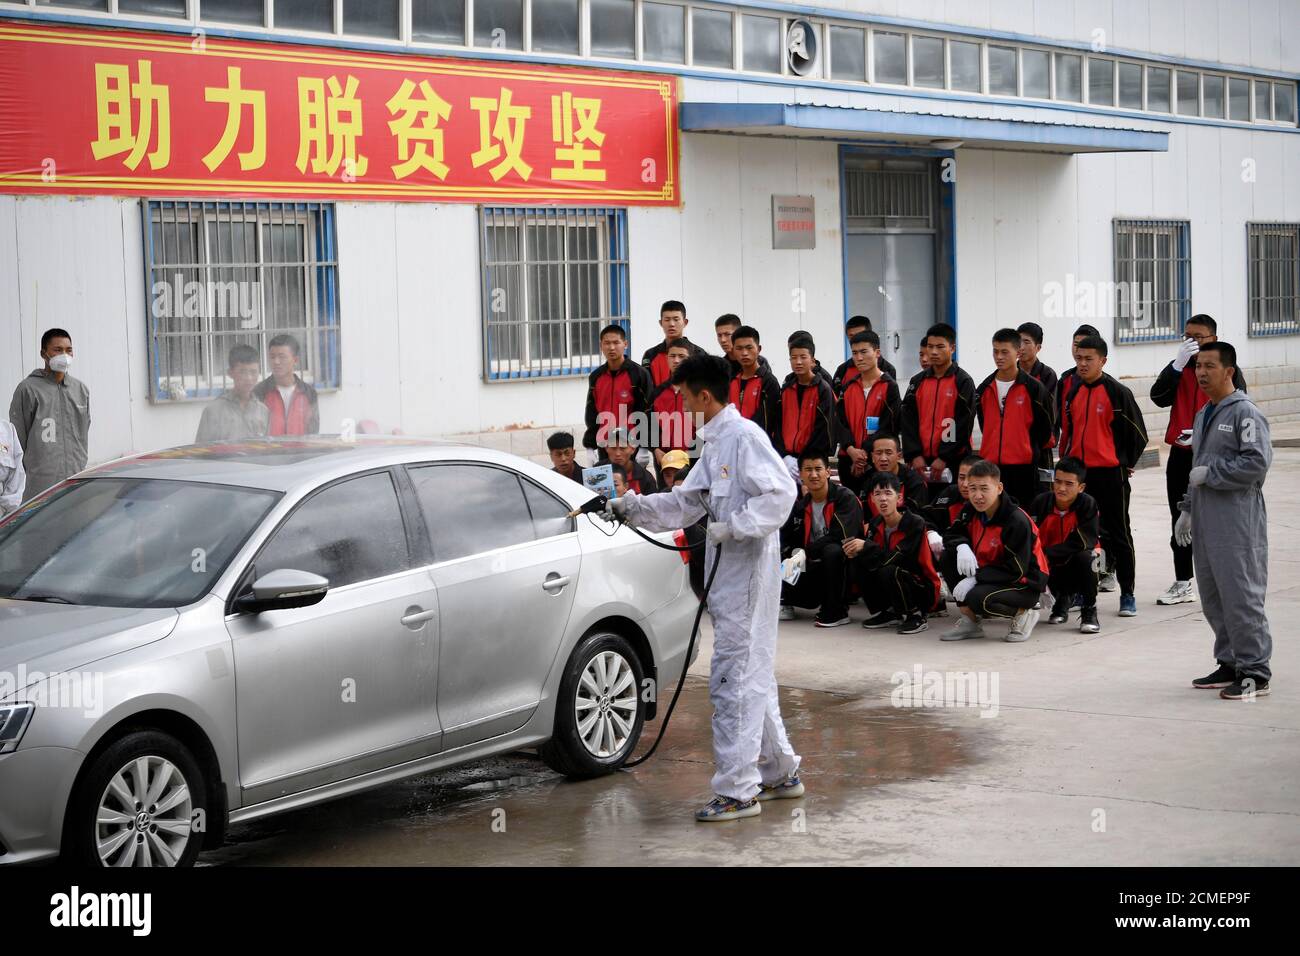 (200917) -- GUYUAN, 17 settembre 2020 (Xinhua) -- gli studenti hanno una lezione di formazione sulla manutenzione di auto in una scuola professionale nella contea di Xiji, nella regione Autonoma di Ningxia Hui nella Cina nord-occidentale, 16 settembre 2020. Xiji è l'ultima contea che è quello di scuotere la povertà in Ningxia. Lo sviluppo dell'istruzione professionale locale è fortemente responsabile dell'eliminazione della povertà. Nel corso degli anni, il governo locale ha adottato varie misure per sviluppare un'istruzione professionale basata sulle esigenze del mercato del lavoro. Ormai, la scuola professionale ha formato oltre 90,000 personale tecnico. (Xinhua/Wang Peng) Foto Stock